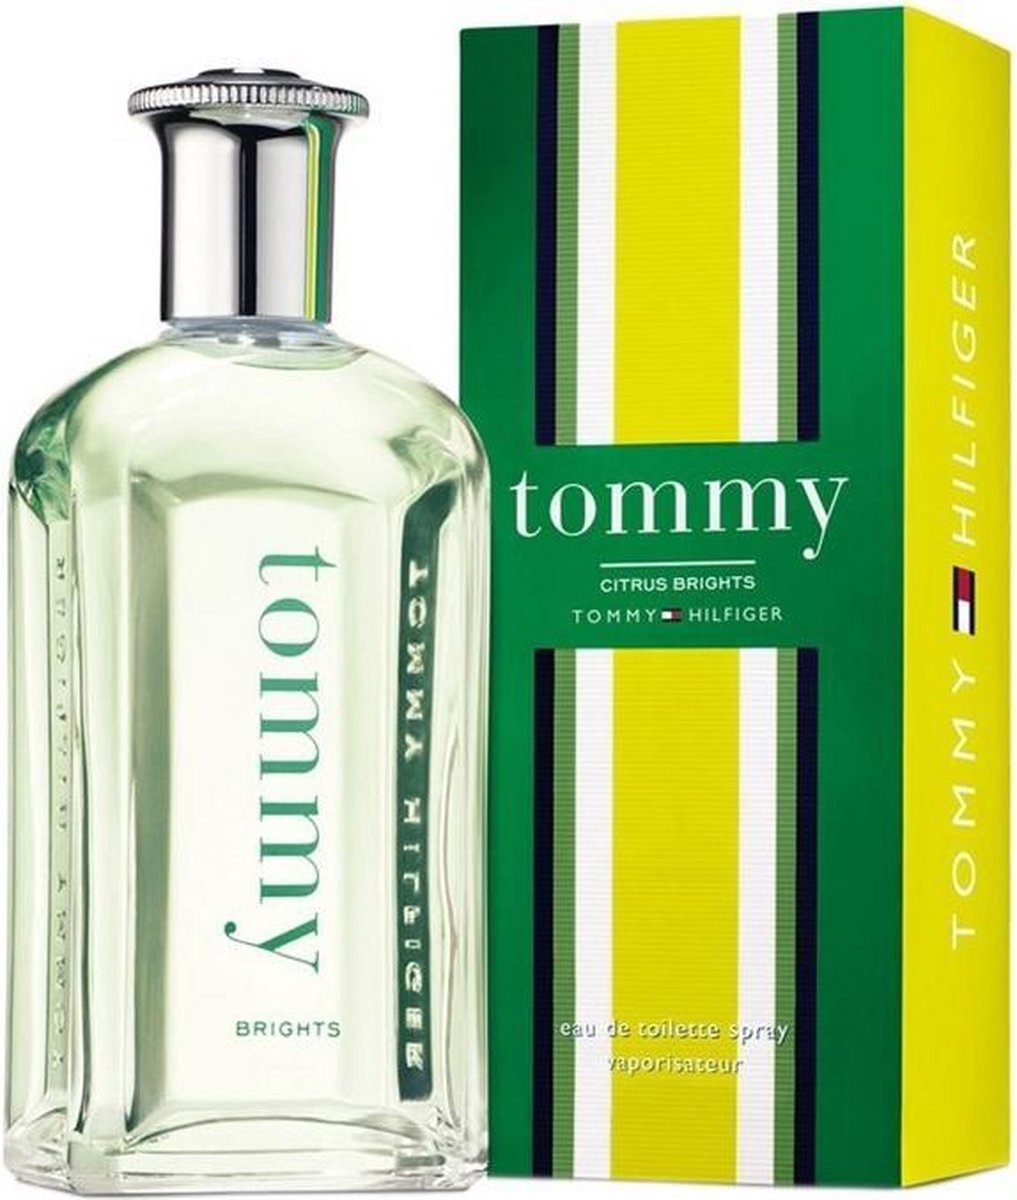 Tommy Hilfiger Citrus Brights - 100 ml - Eau de Toilette